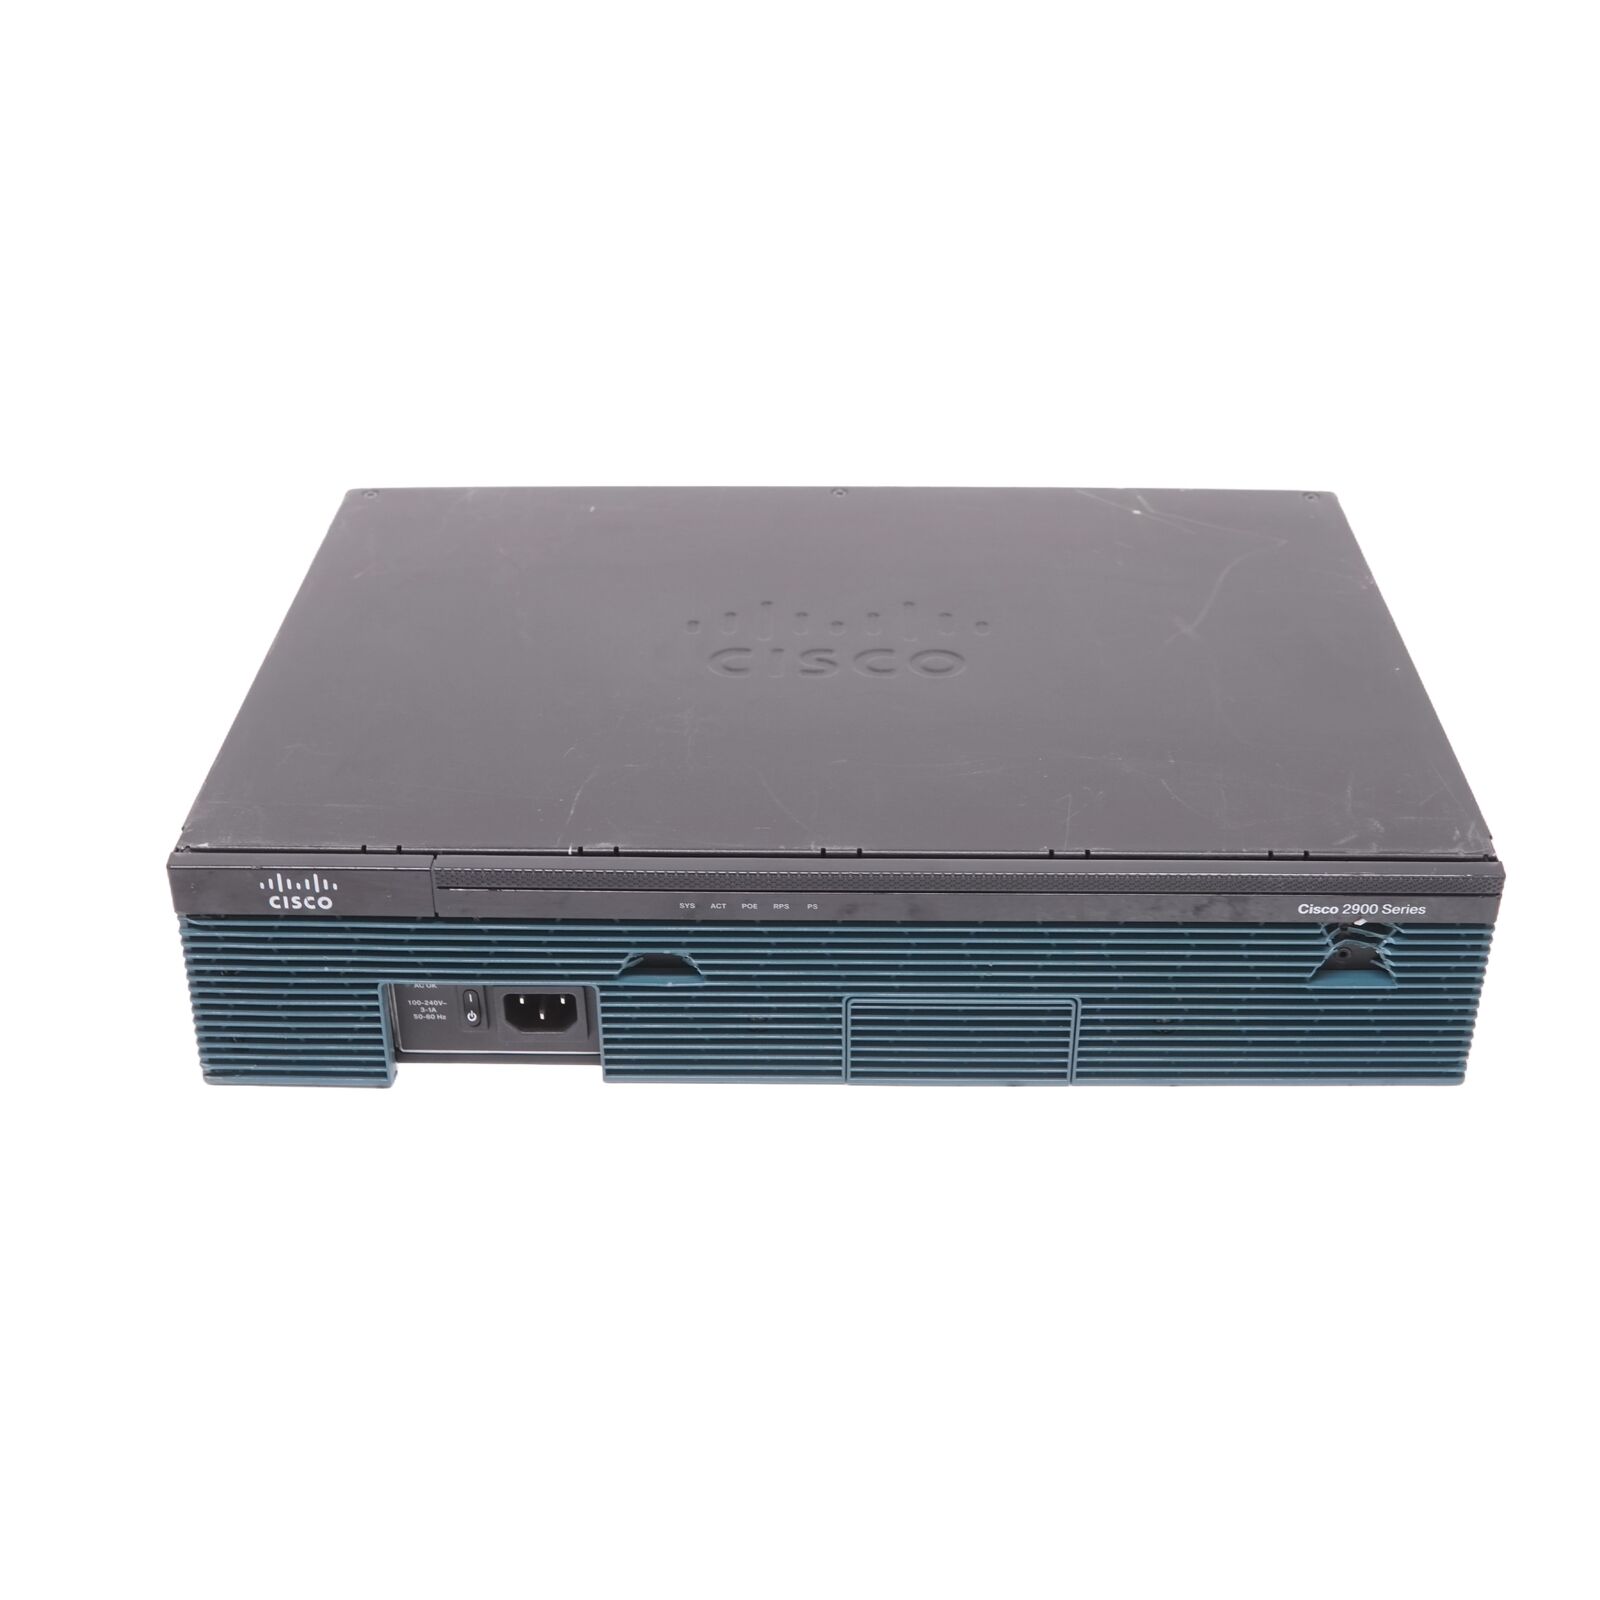 Cisco Cisco 2900 Series CISCO2911/K9